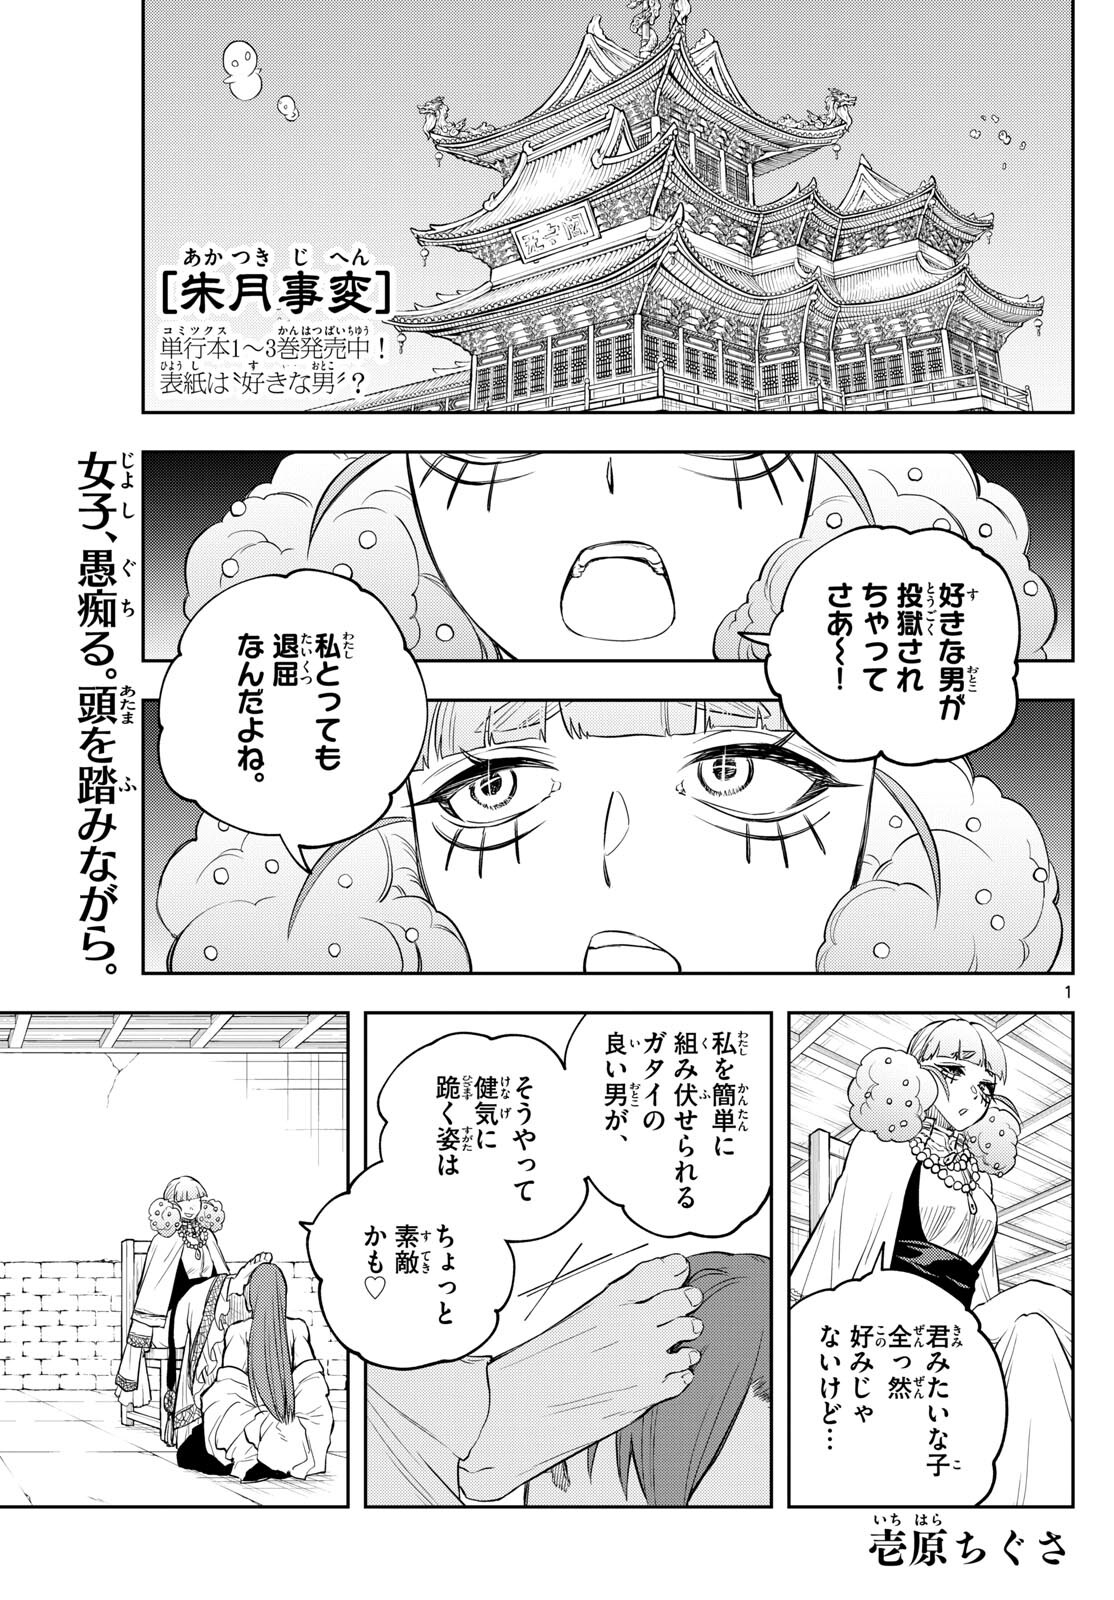 Akatsuki Jihen - Chapter 41 - Page 1